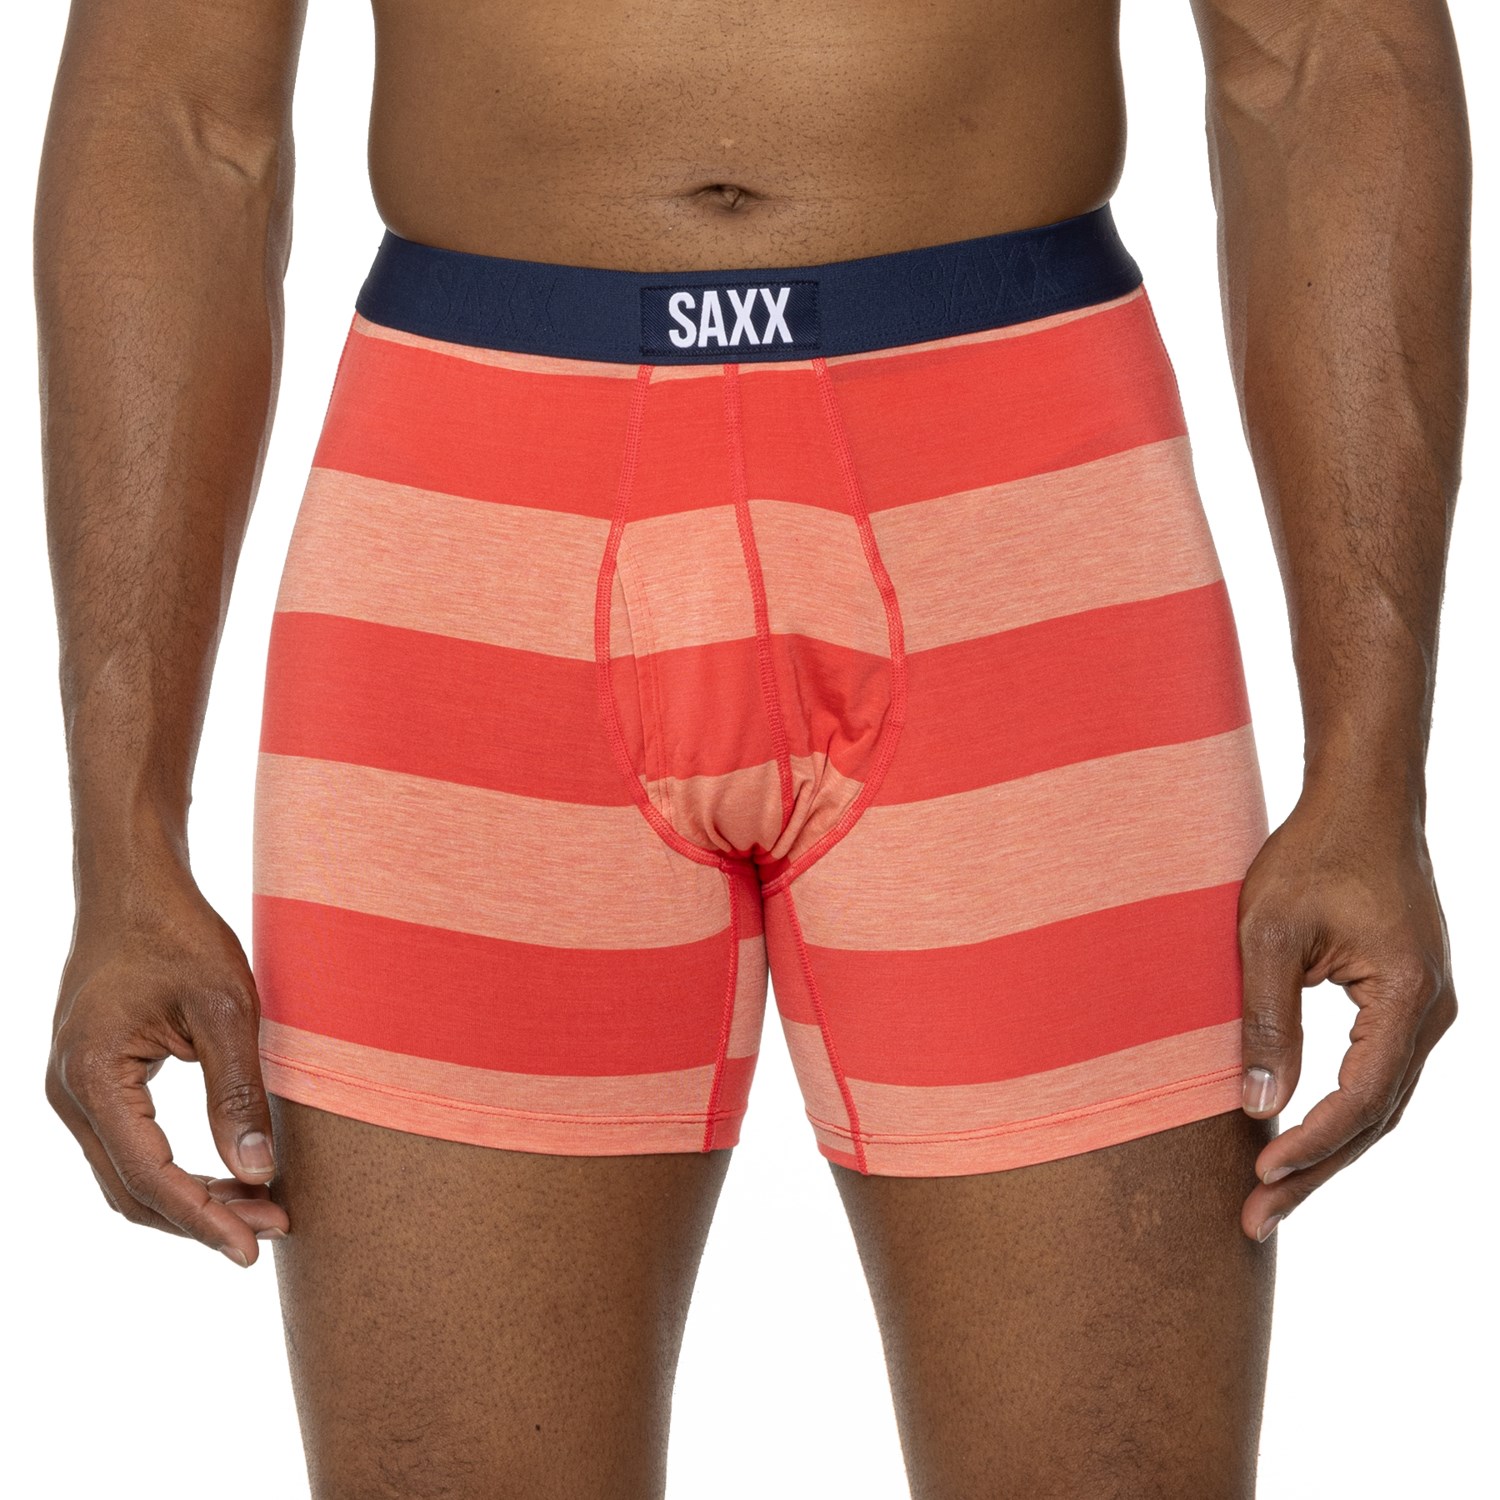 SAXX Ultra Tri-Blend Boxer Fly - Men's Underwear - 2 Pack